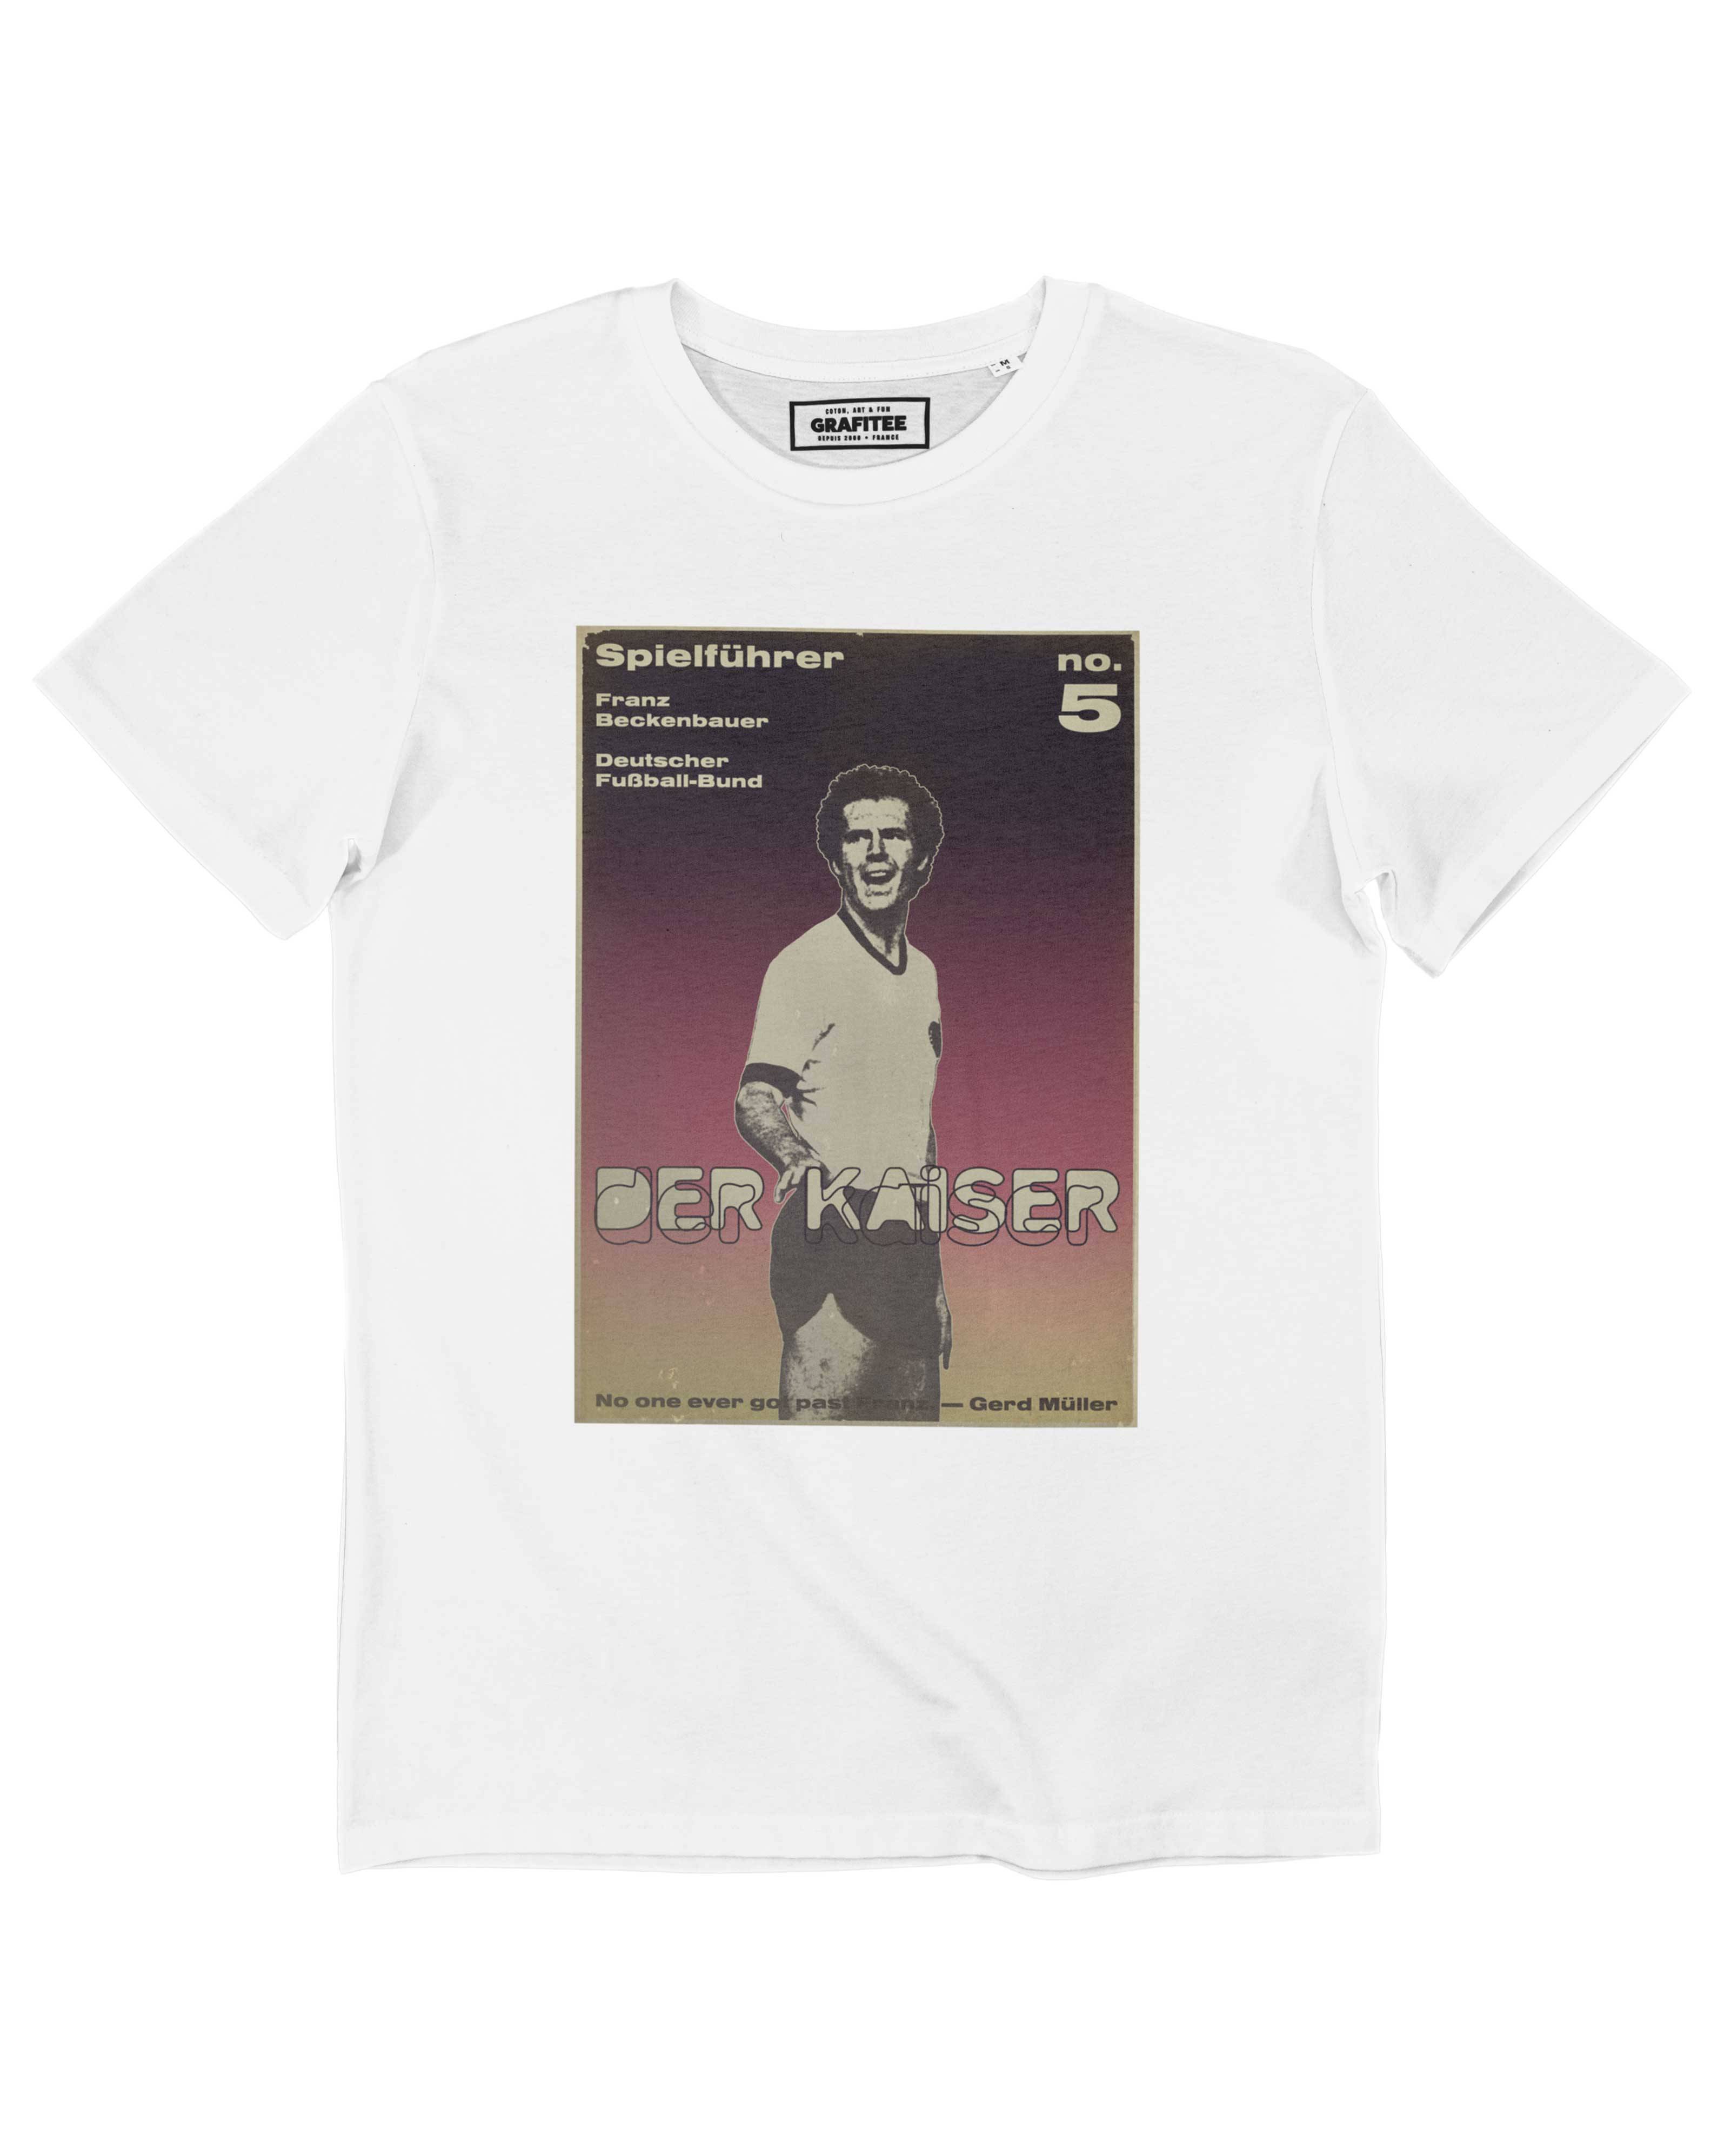 T-shirt Franz Beckenbauer Grafitee